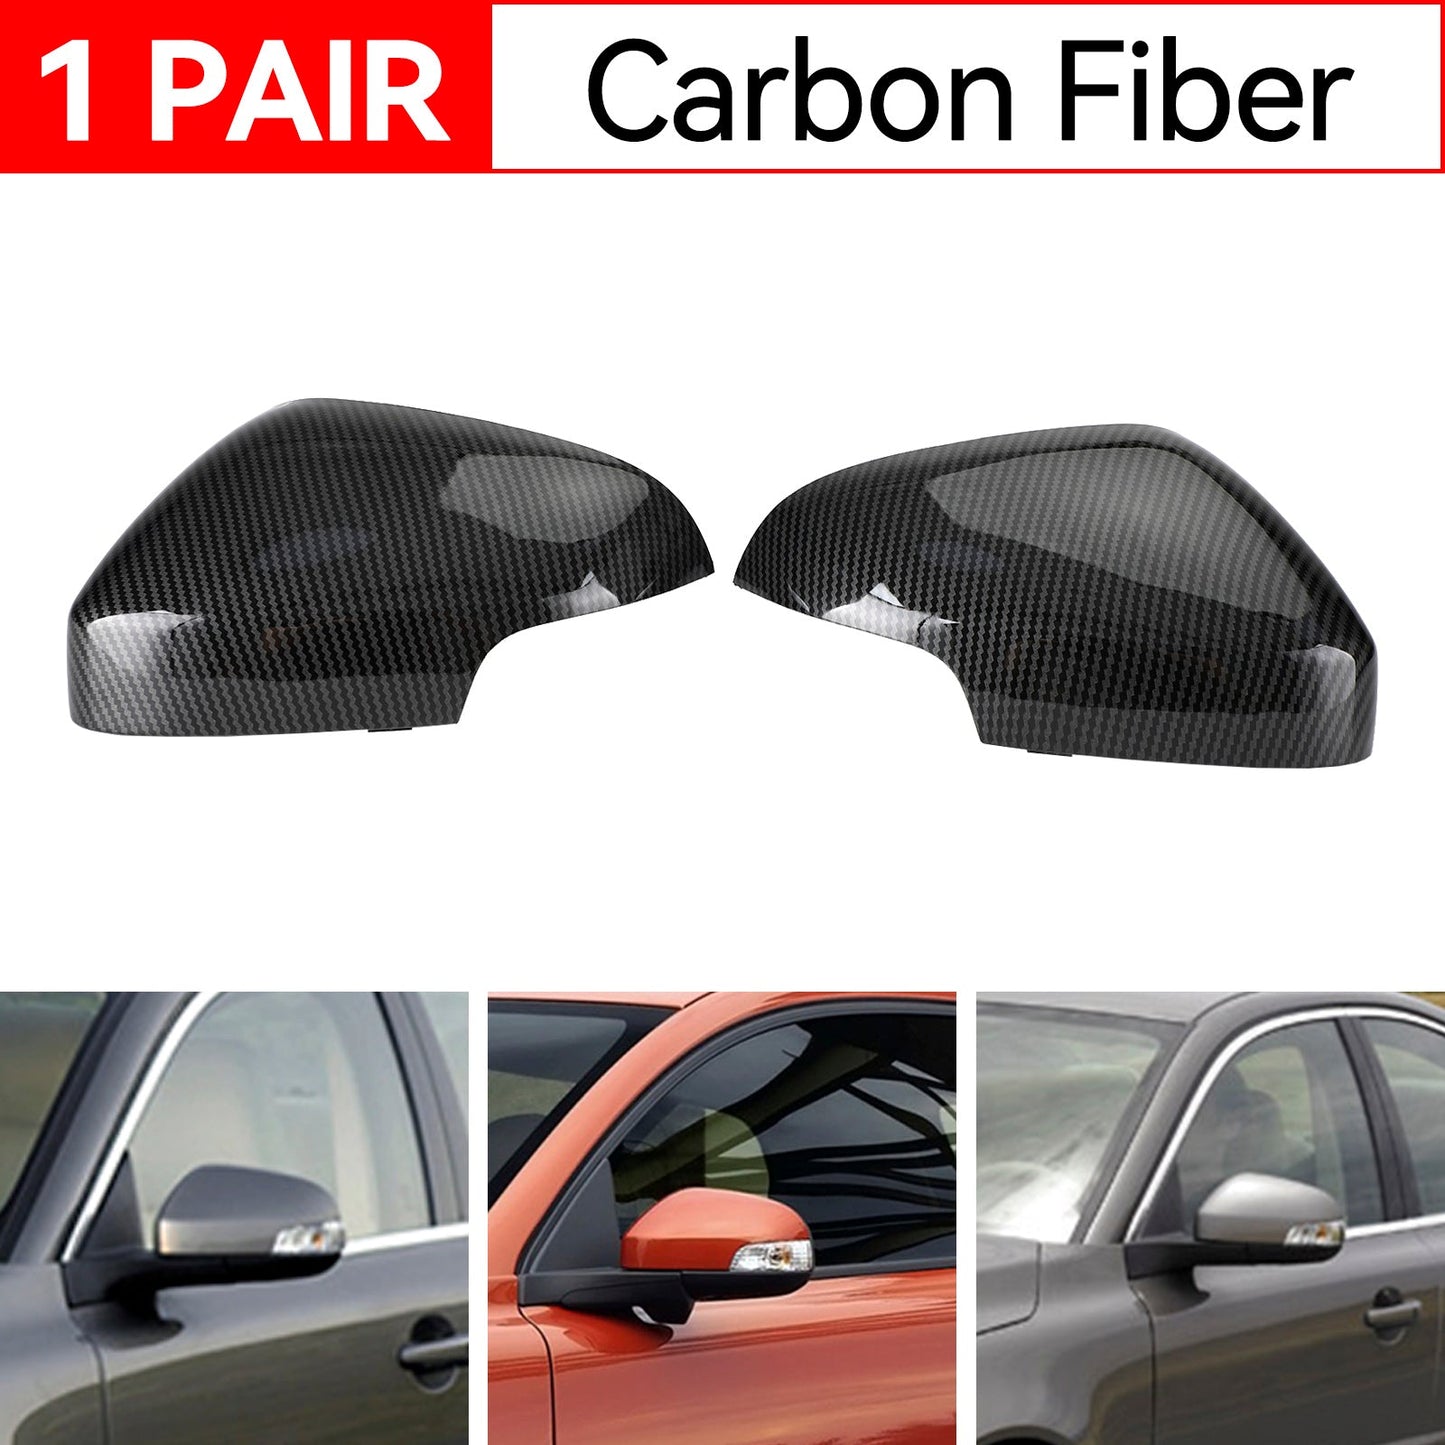 2010-2013 C30 C70 T5 Carbon Fiber Rearview Side Mirror Cover Cap 398505339 398505537